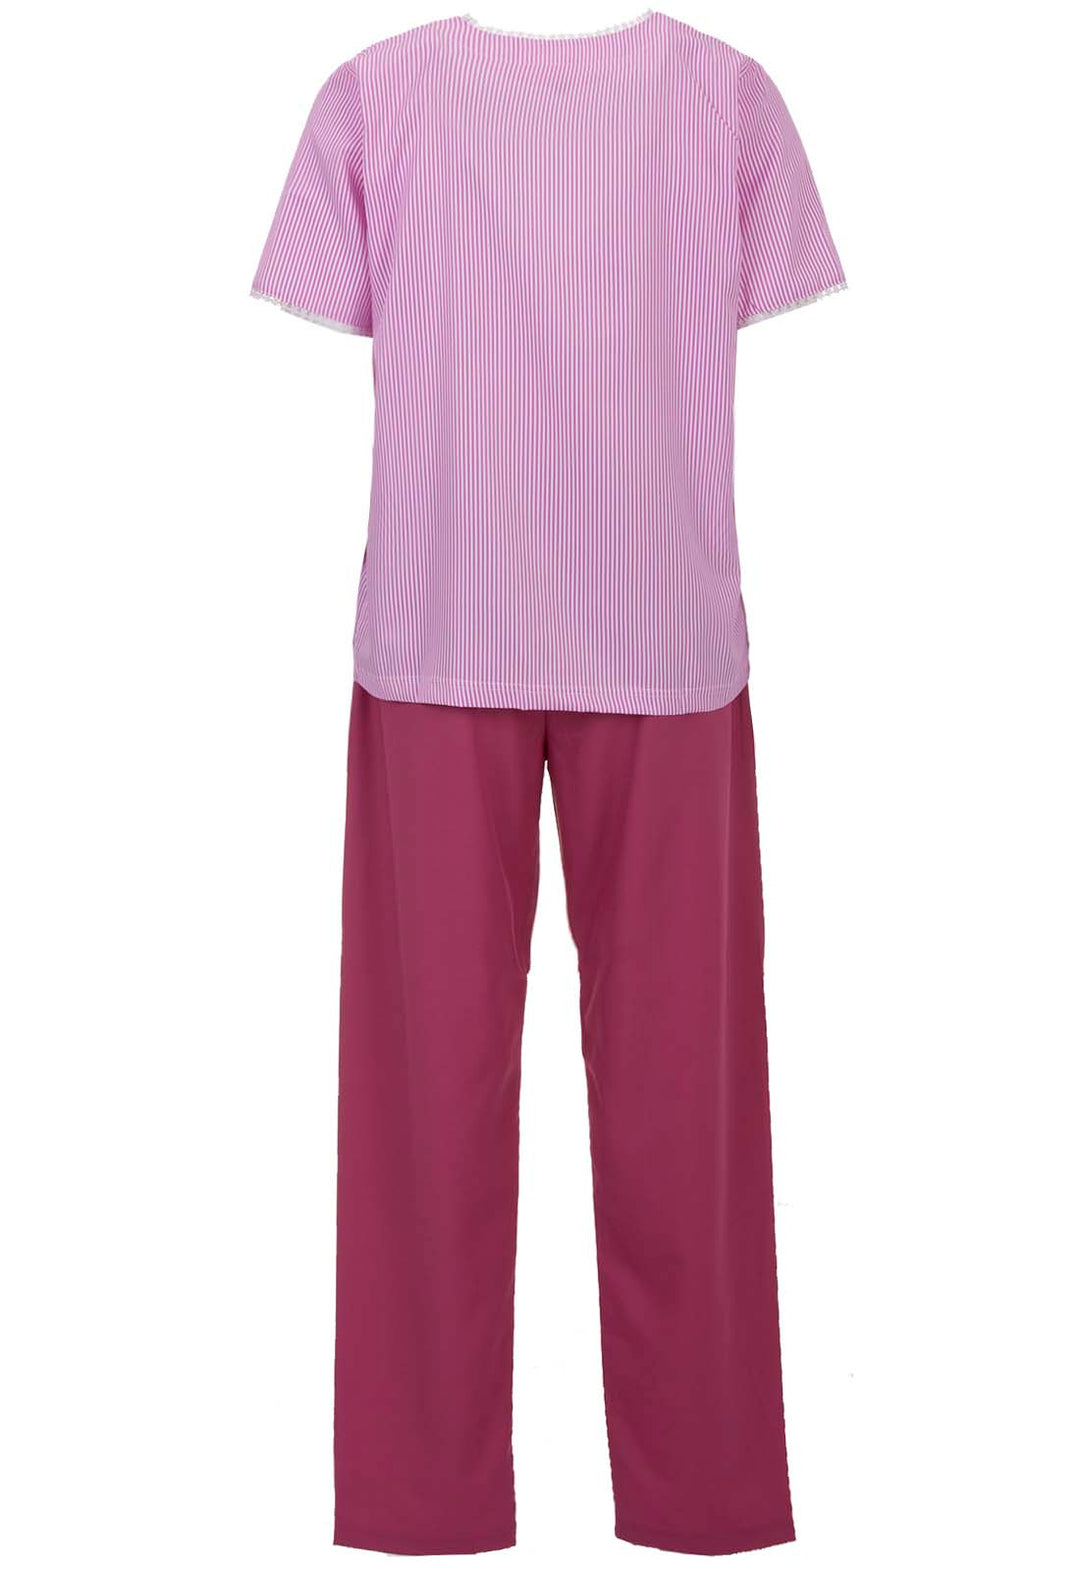 Pajama Set Short Sleeve - Lace Striped